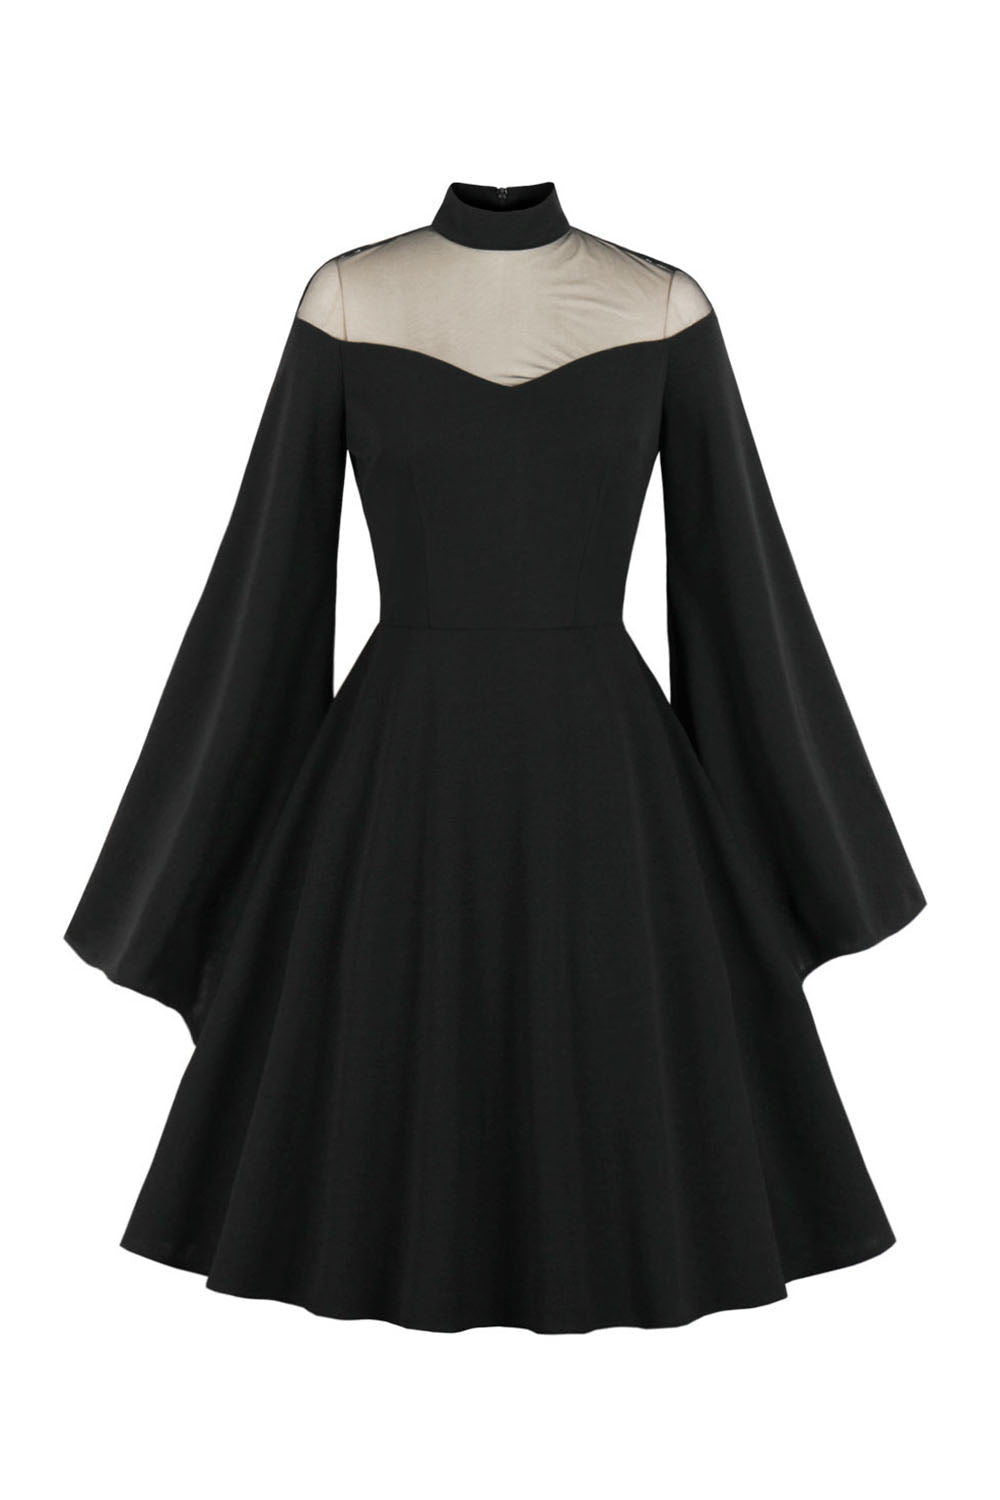 Vintage Schwarzes Halloween Kleid mit langen Ärmeln